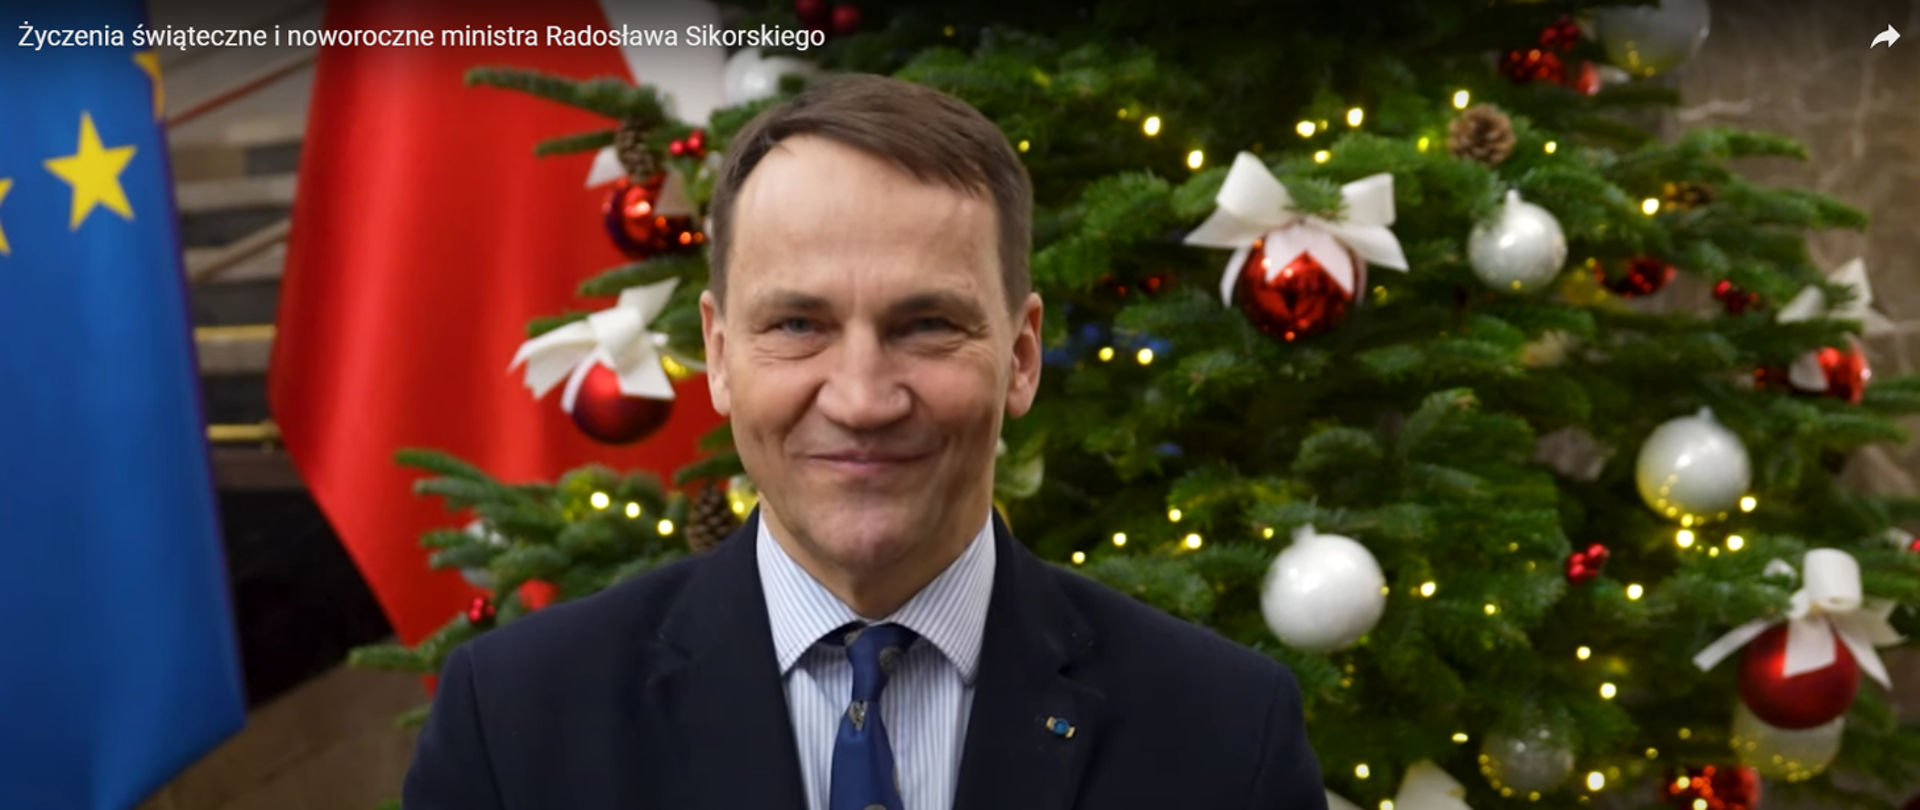 Życzenia świąteczne i noworoczne ministra Radosława Sikorskiego